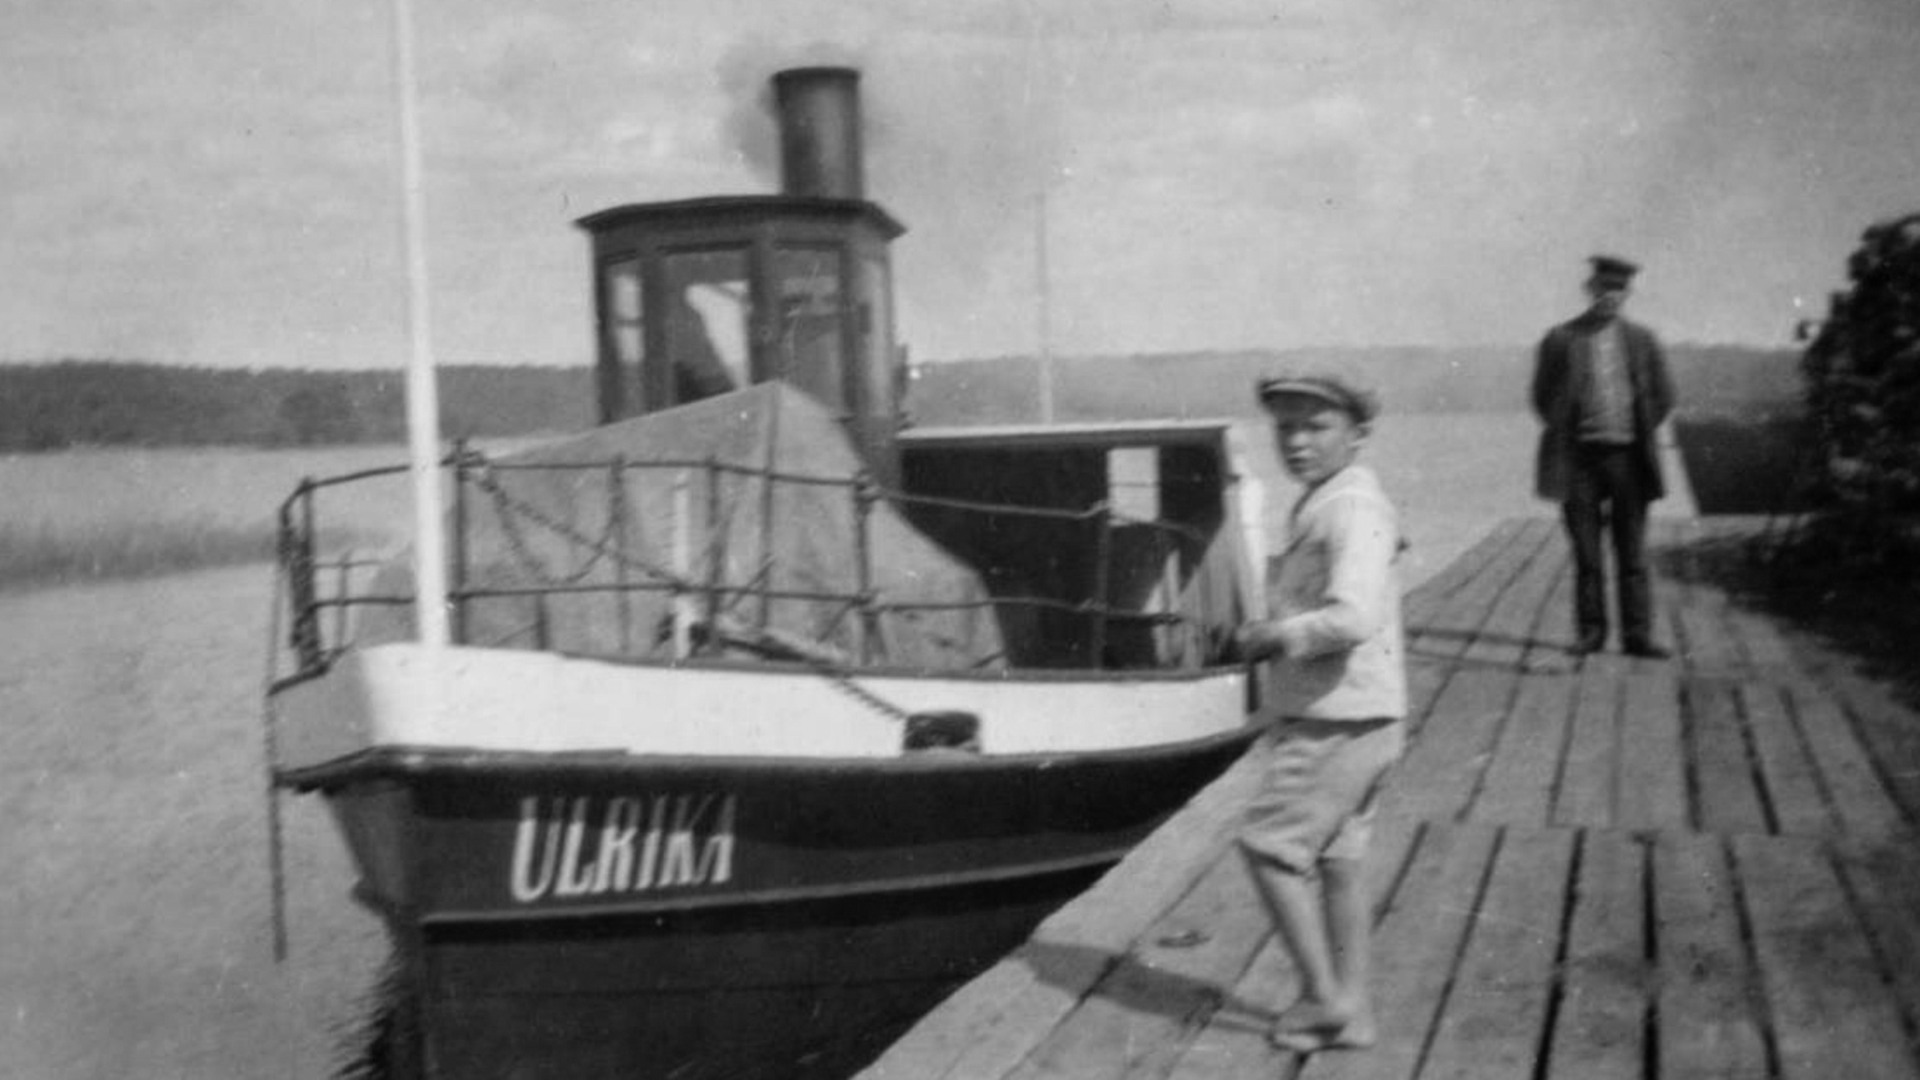 Ångbåten Ulrika ligger invid en brygga. Närmast kameran på bryggan står en pojke i keps och lite längre bort en man.